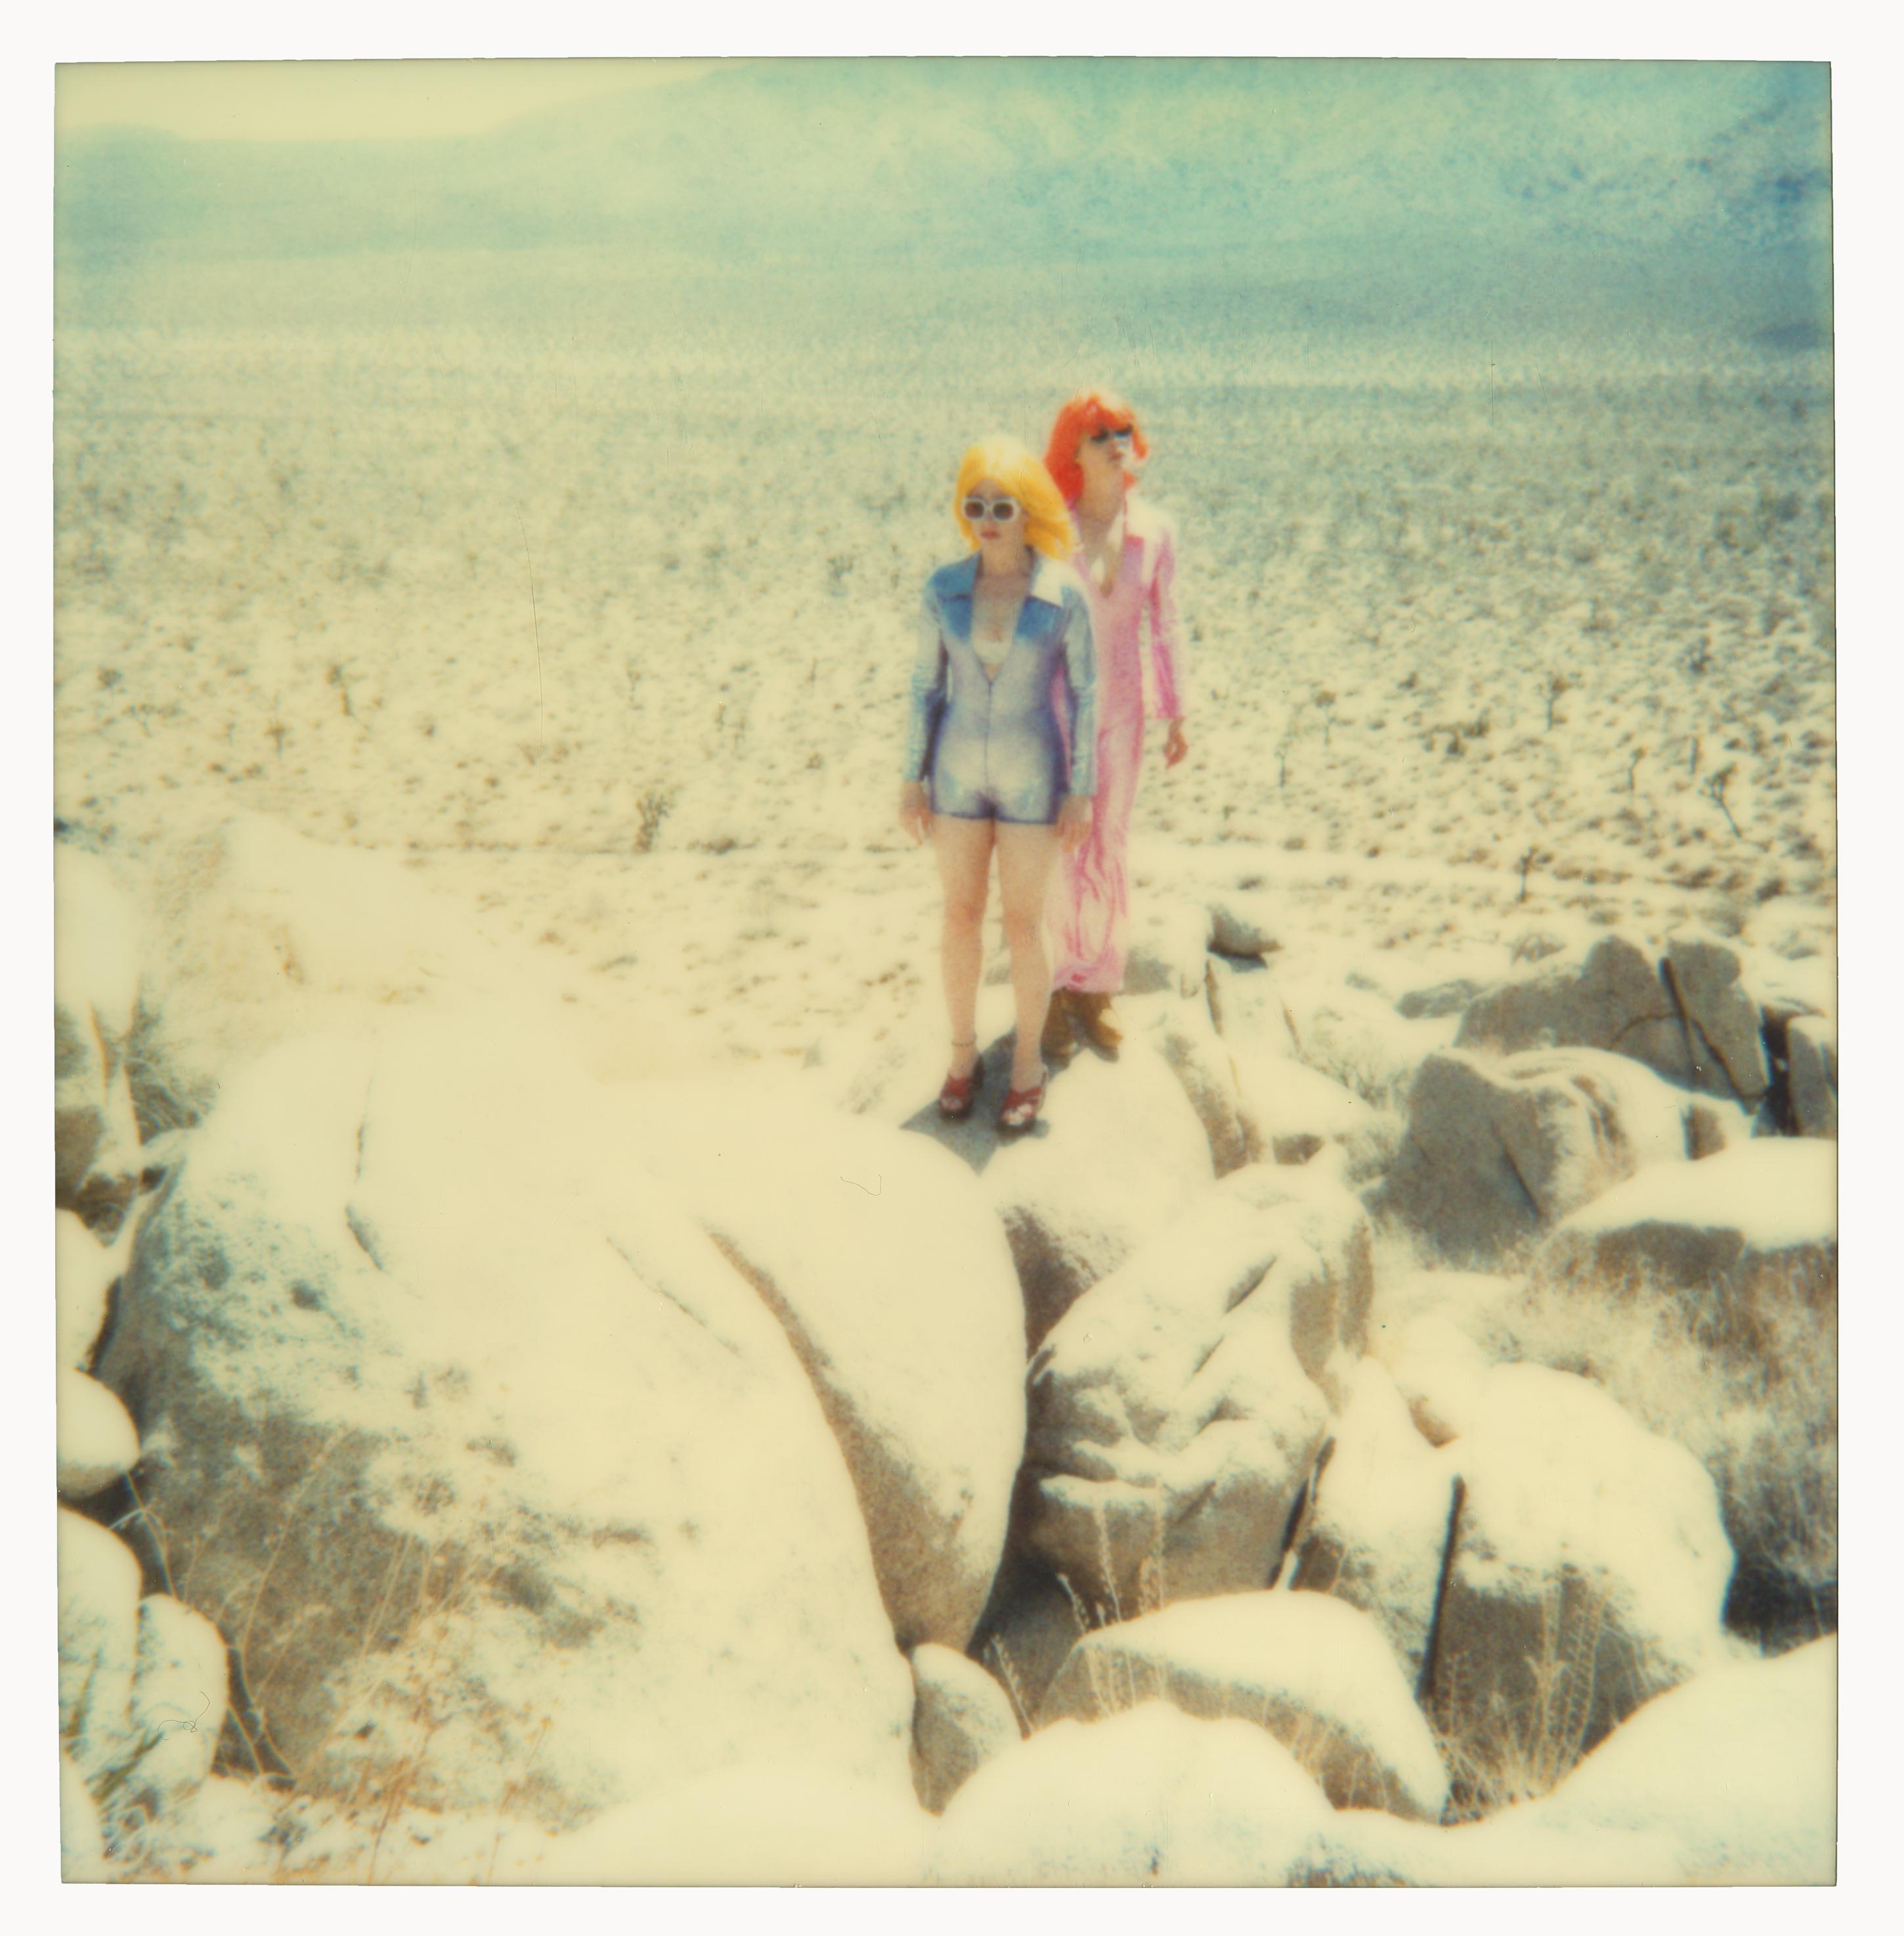 Portrait Photograph Stefanie Schneider - On the Rocks (Long Way Home) - analogique, 58x57cm